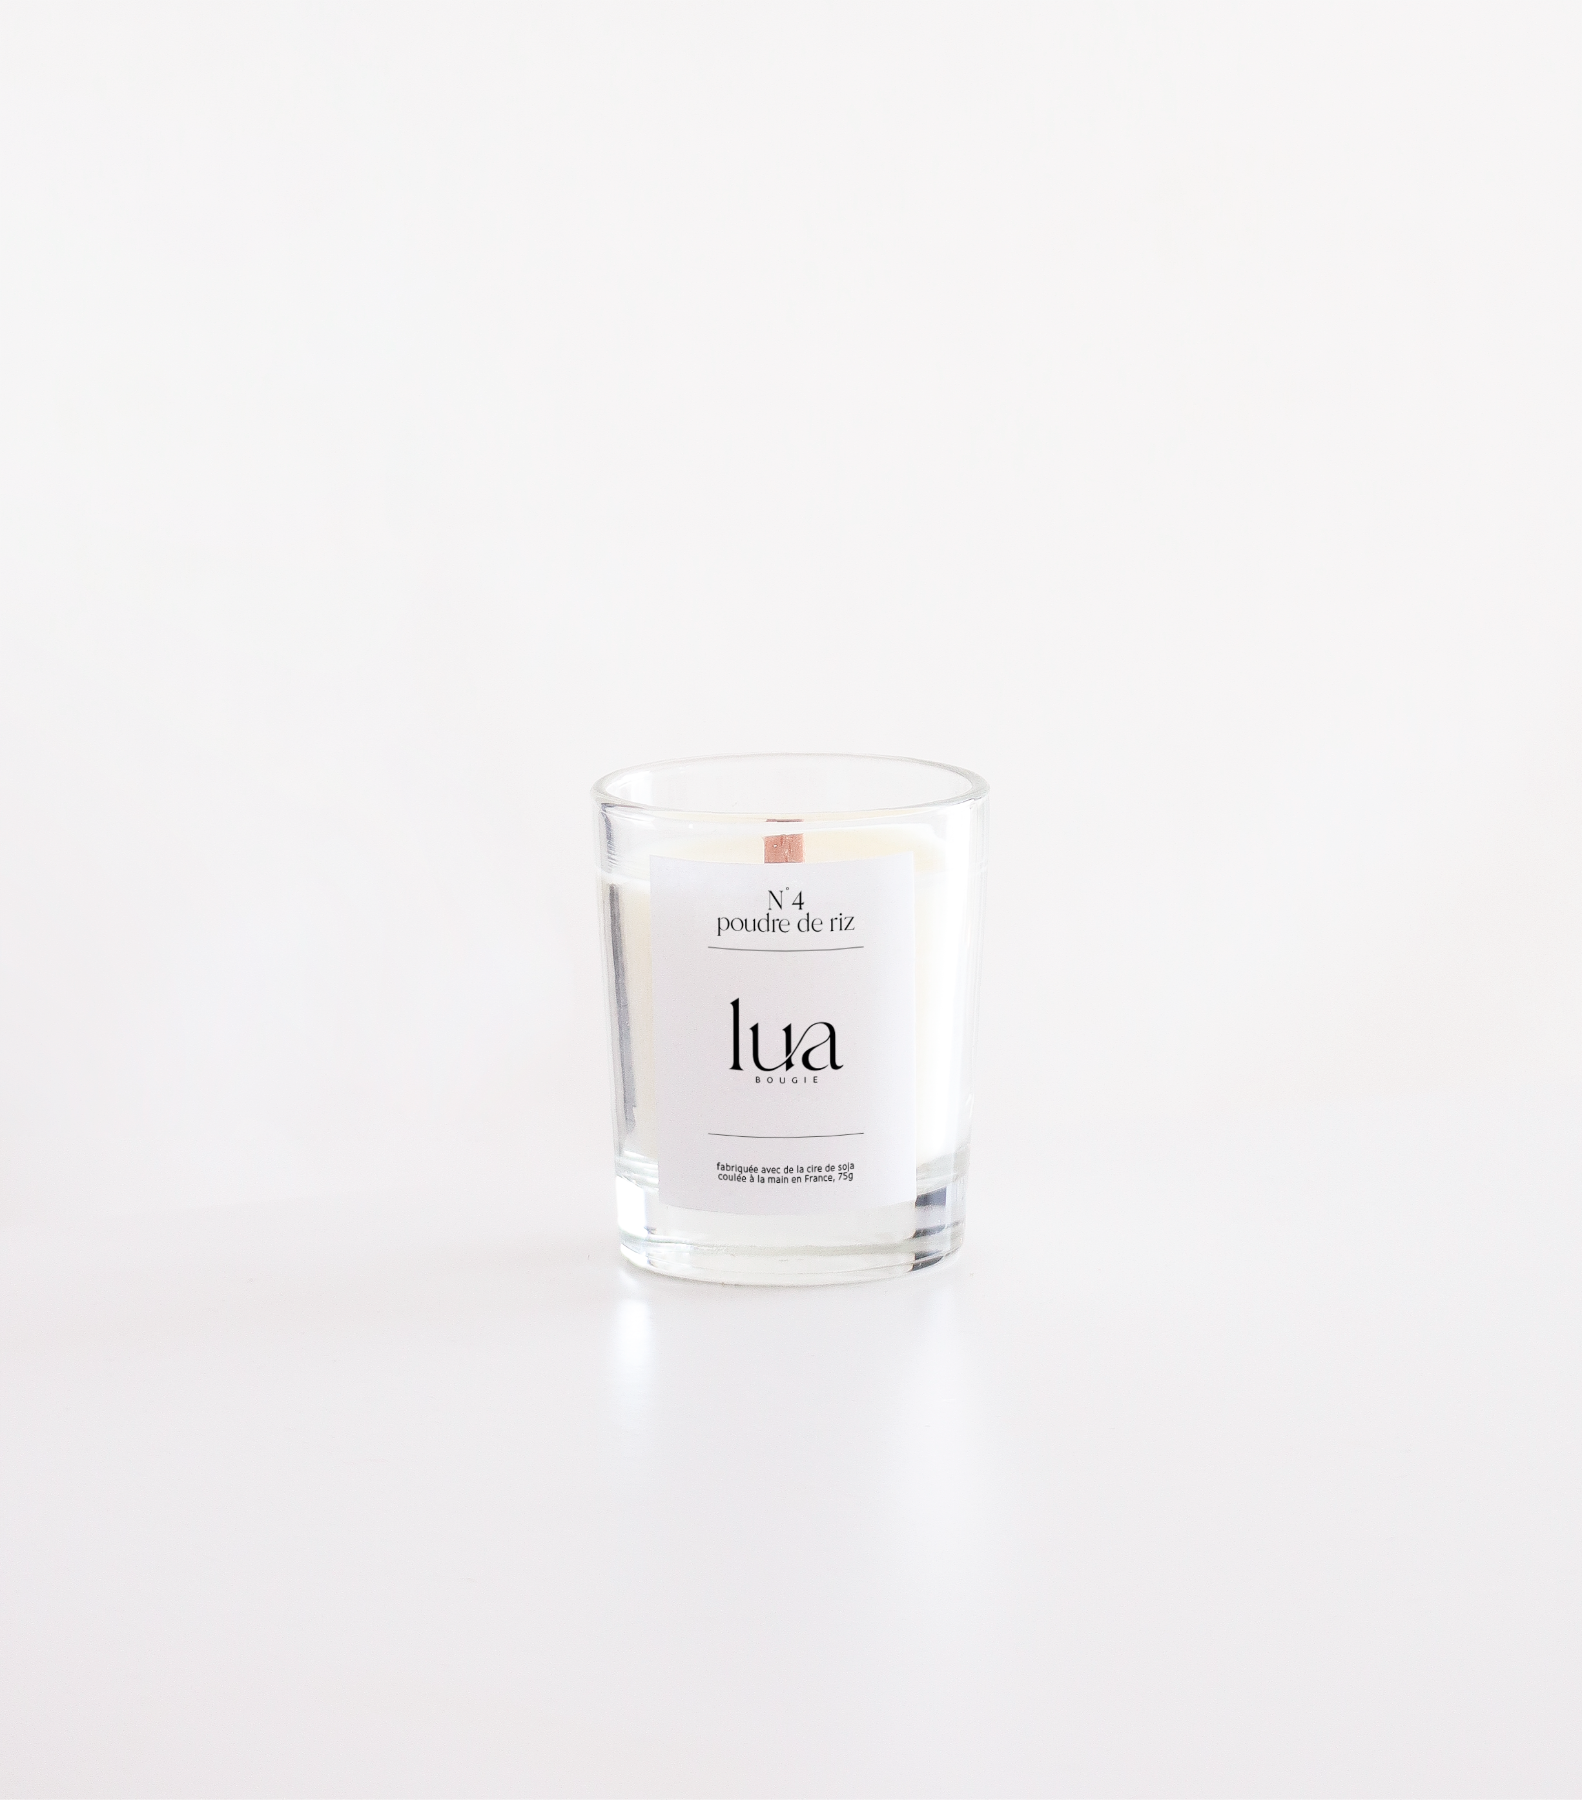 Bougie Lua parfumée et rechargeables, parfum poudre de riz, contenant transparent 75g. 